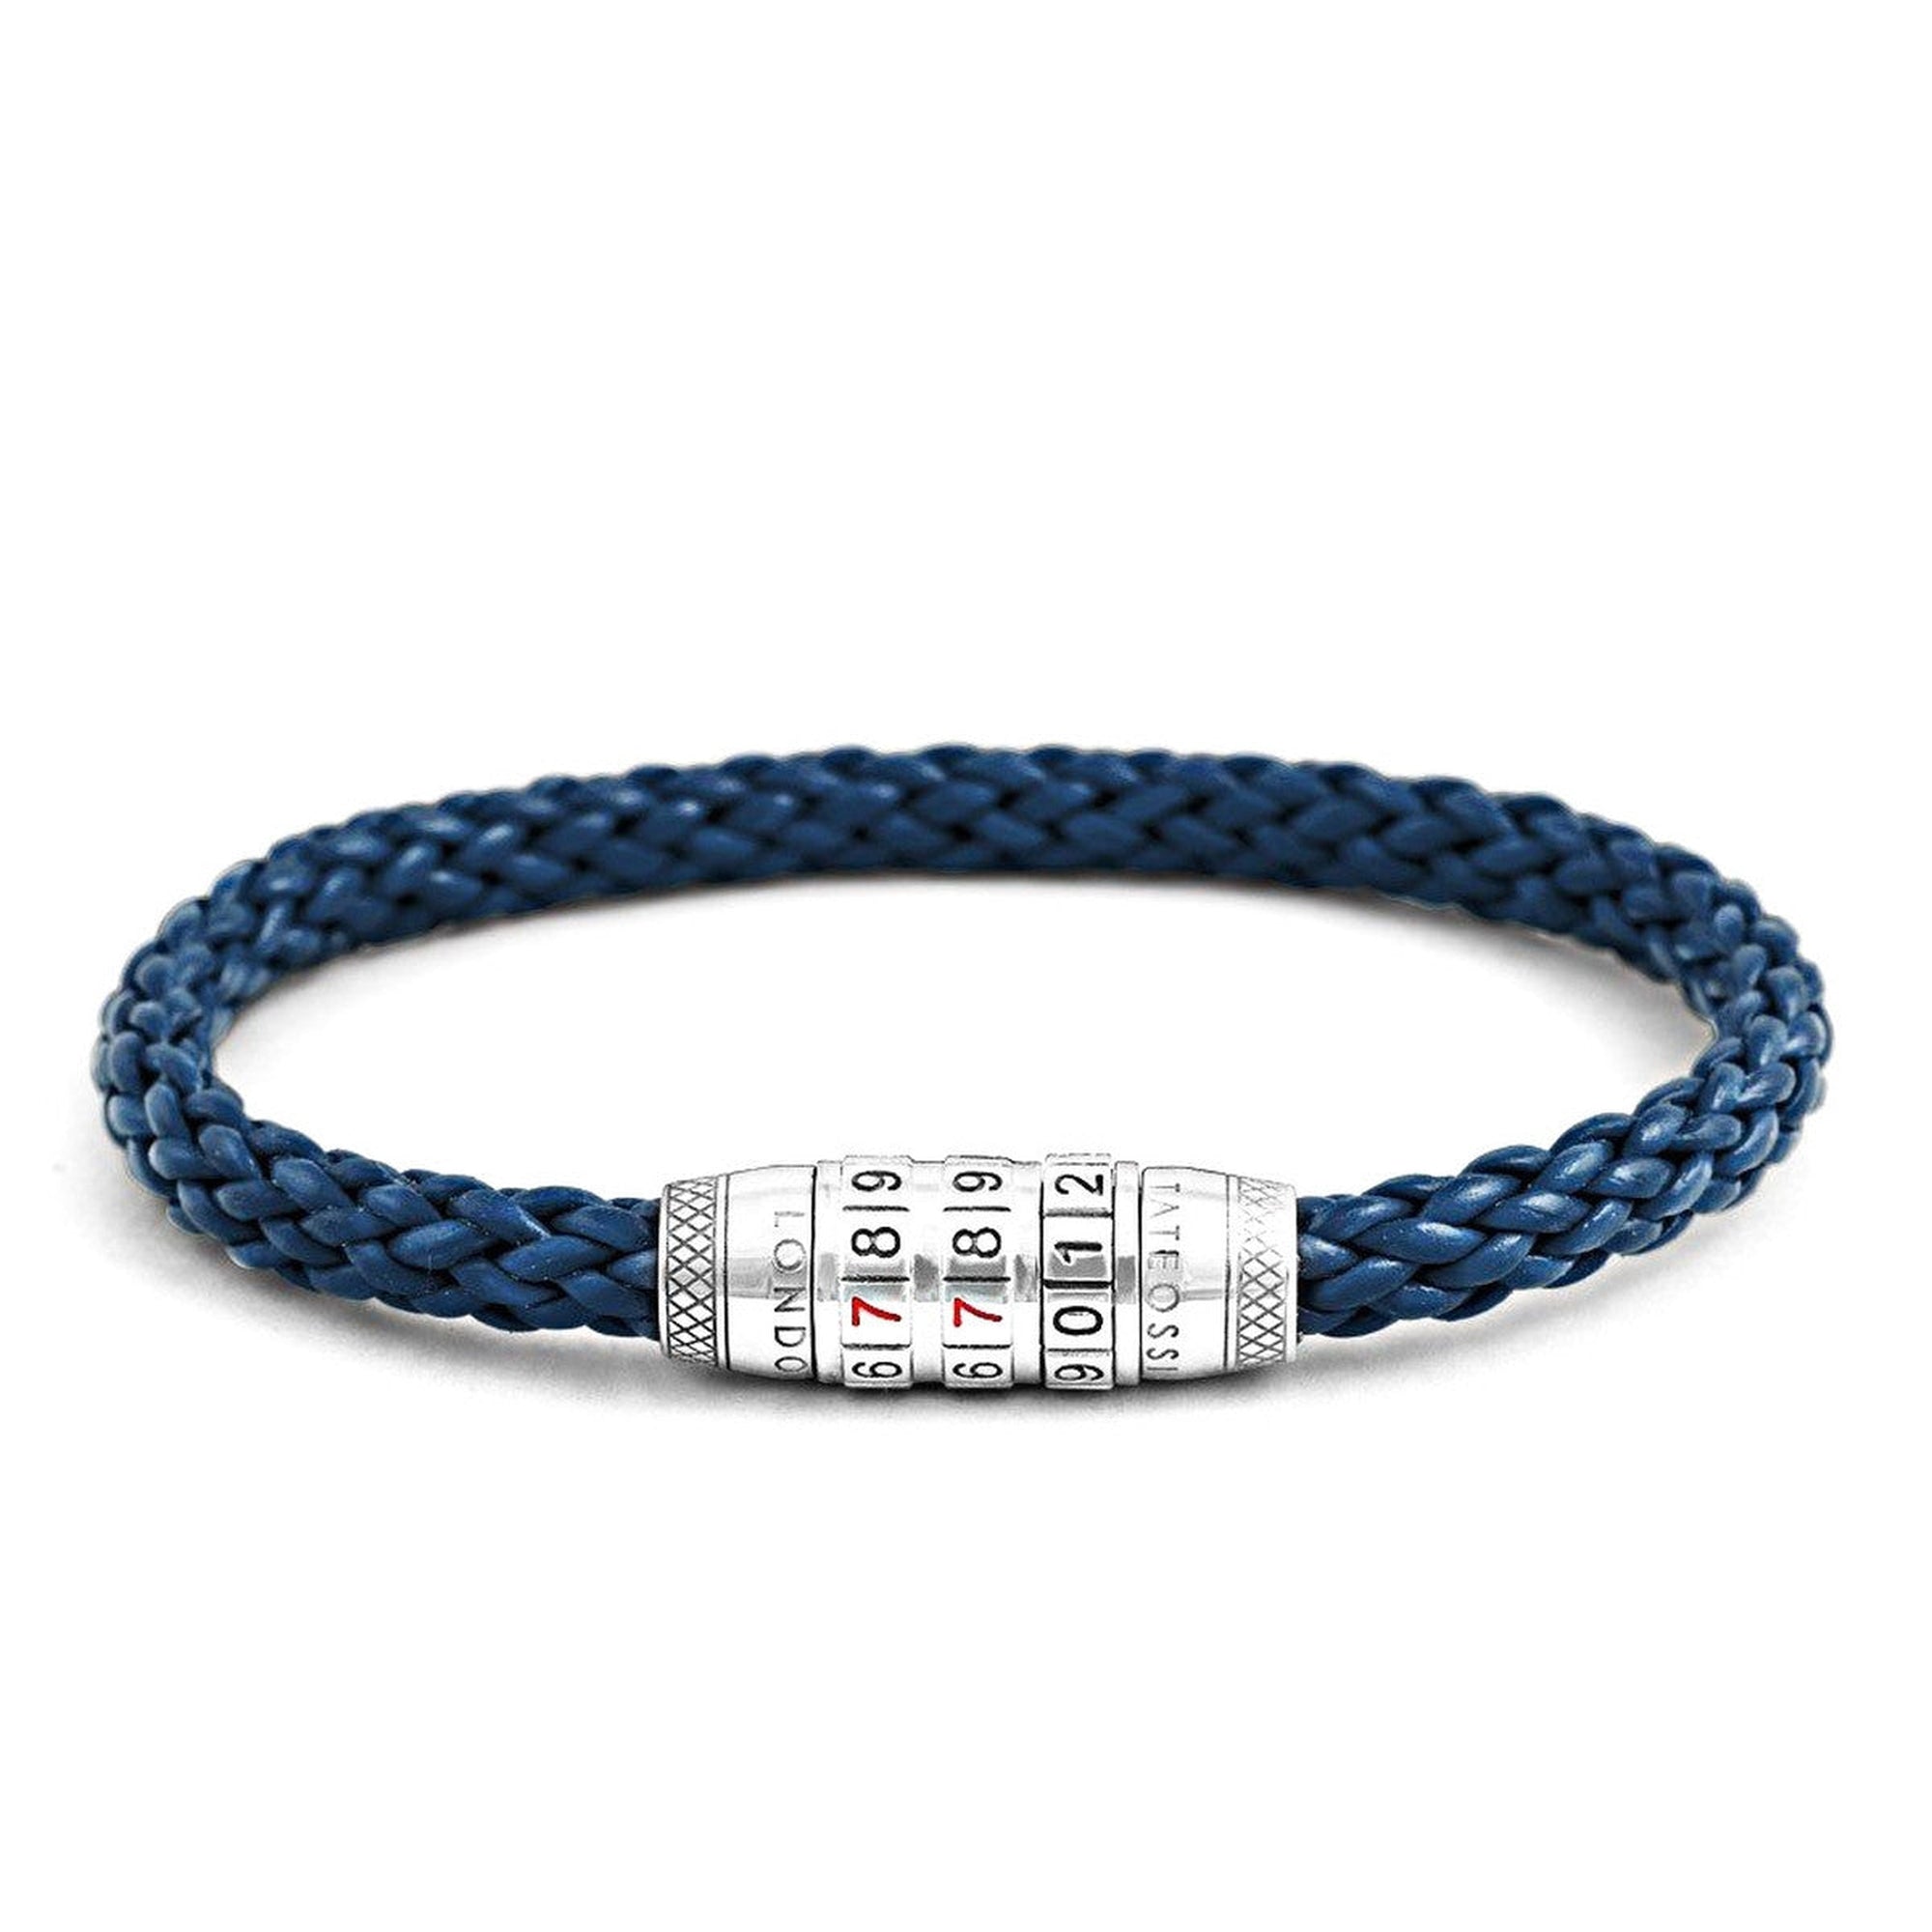 Combination Lock 777 Silver Bracelet In Blue-Bracelets-Tateossian-Cufflinks.com.sg